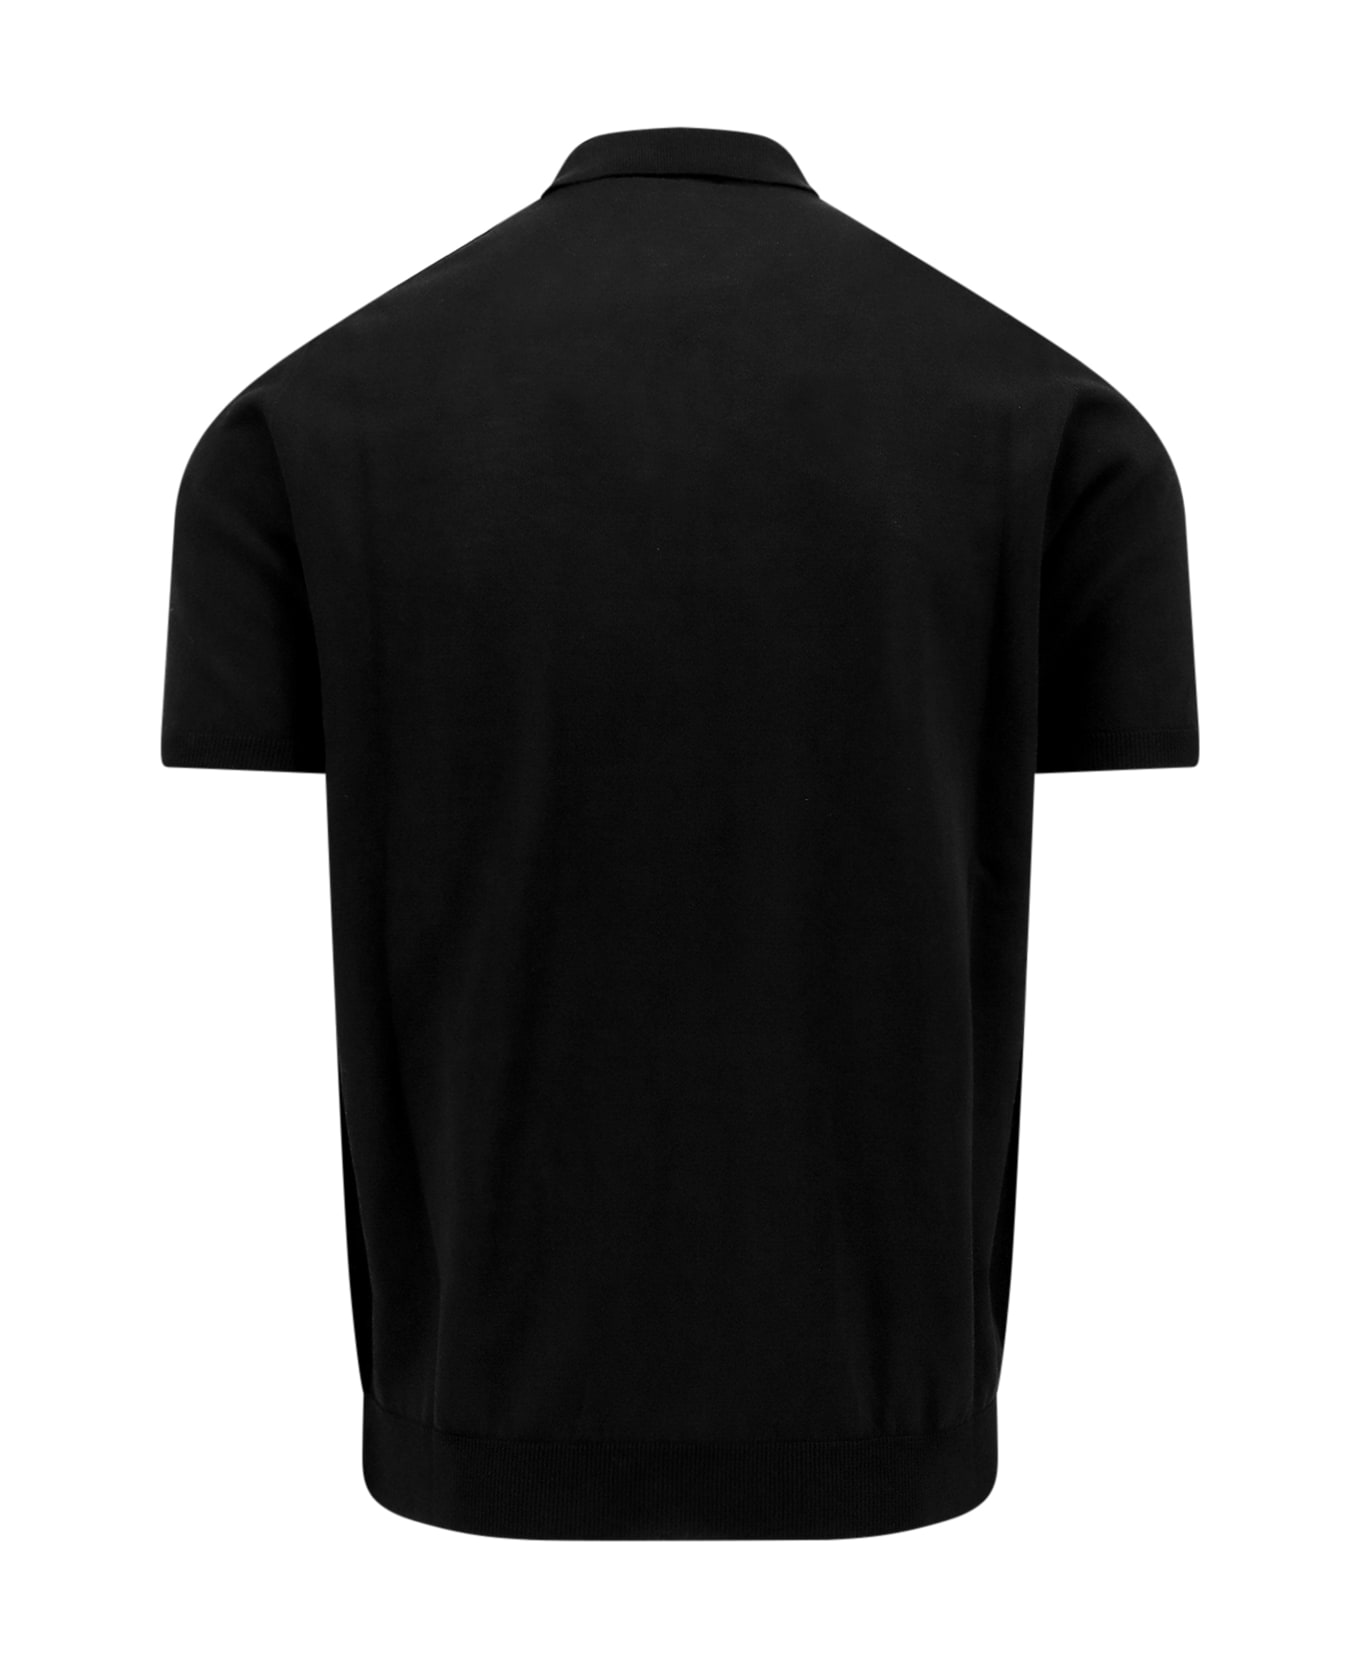 Roberto Collina Polo Shirt - Black